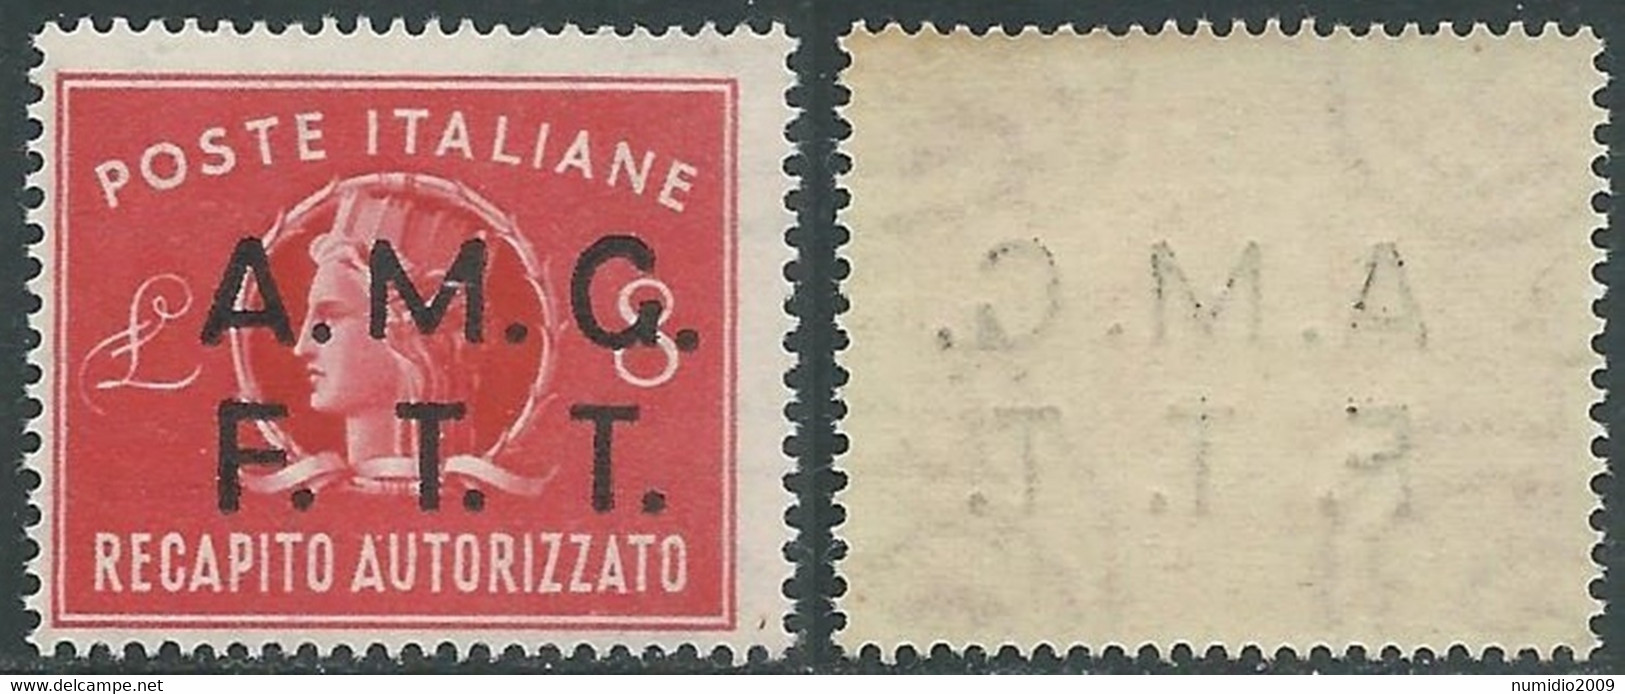 1947 TRIESTE A RECAPITO AUTORIZZATO 8 LIRE DECALCO MNH ** - RE6-8 - Posta Espresso